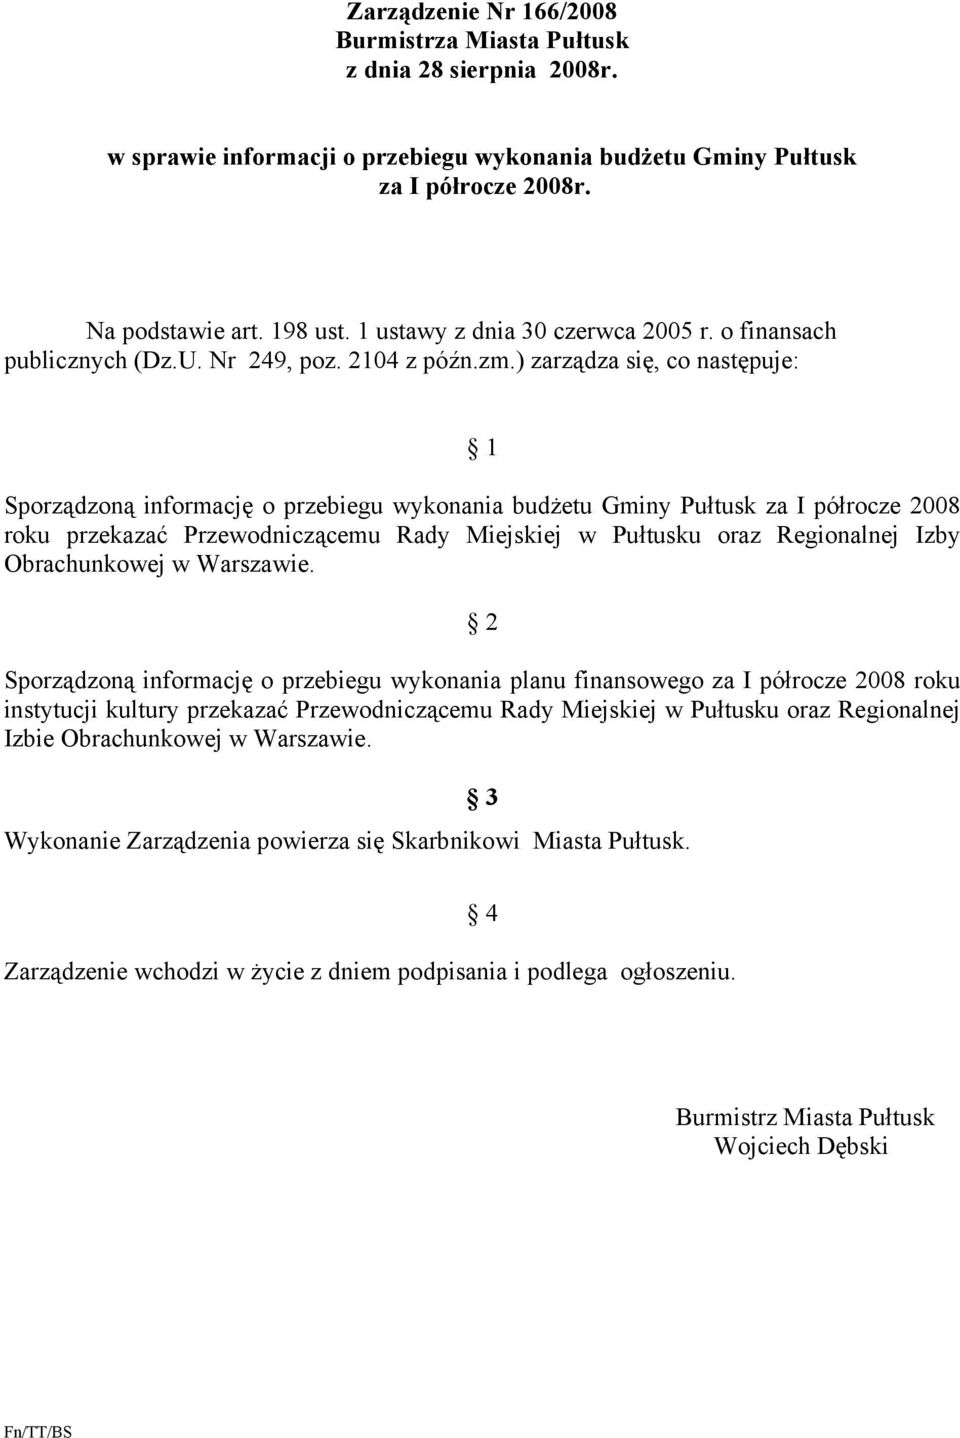 ) zarządza się, co następuje: 1 Sporządzoną informację o przebiegu wykonania budżetu Gminy Pułtusk za I półrocze 2008 roku przekazać Przewodniczącemu Rady Miejskiej w Pułtusku oraz Regionalnej Izby